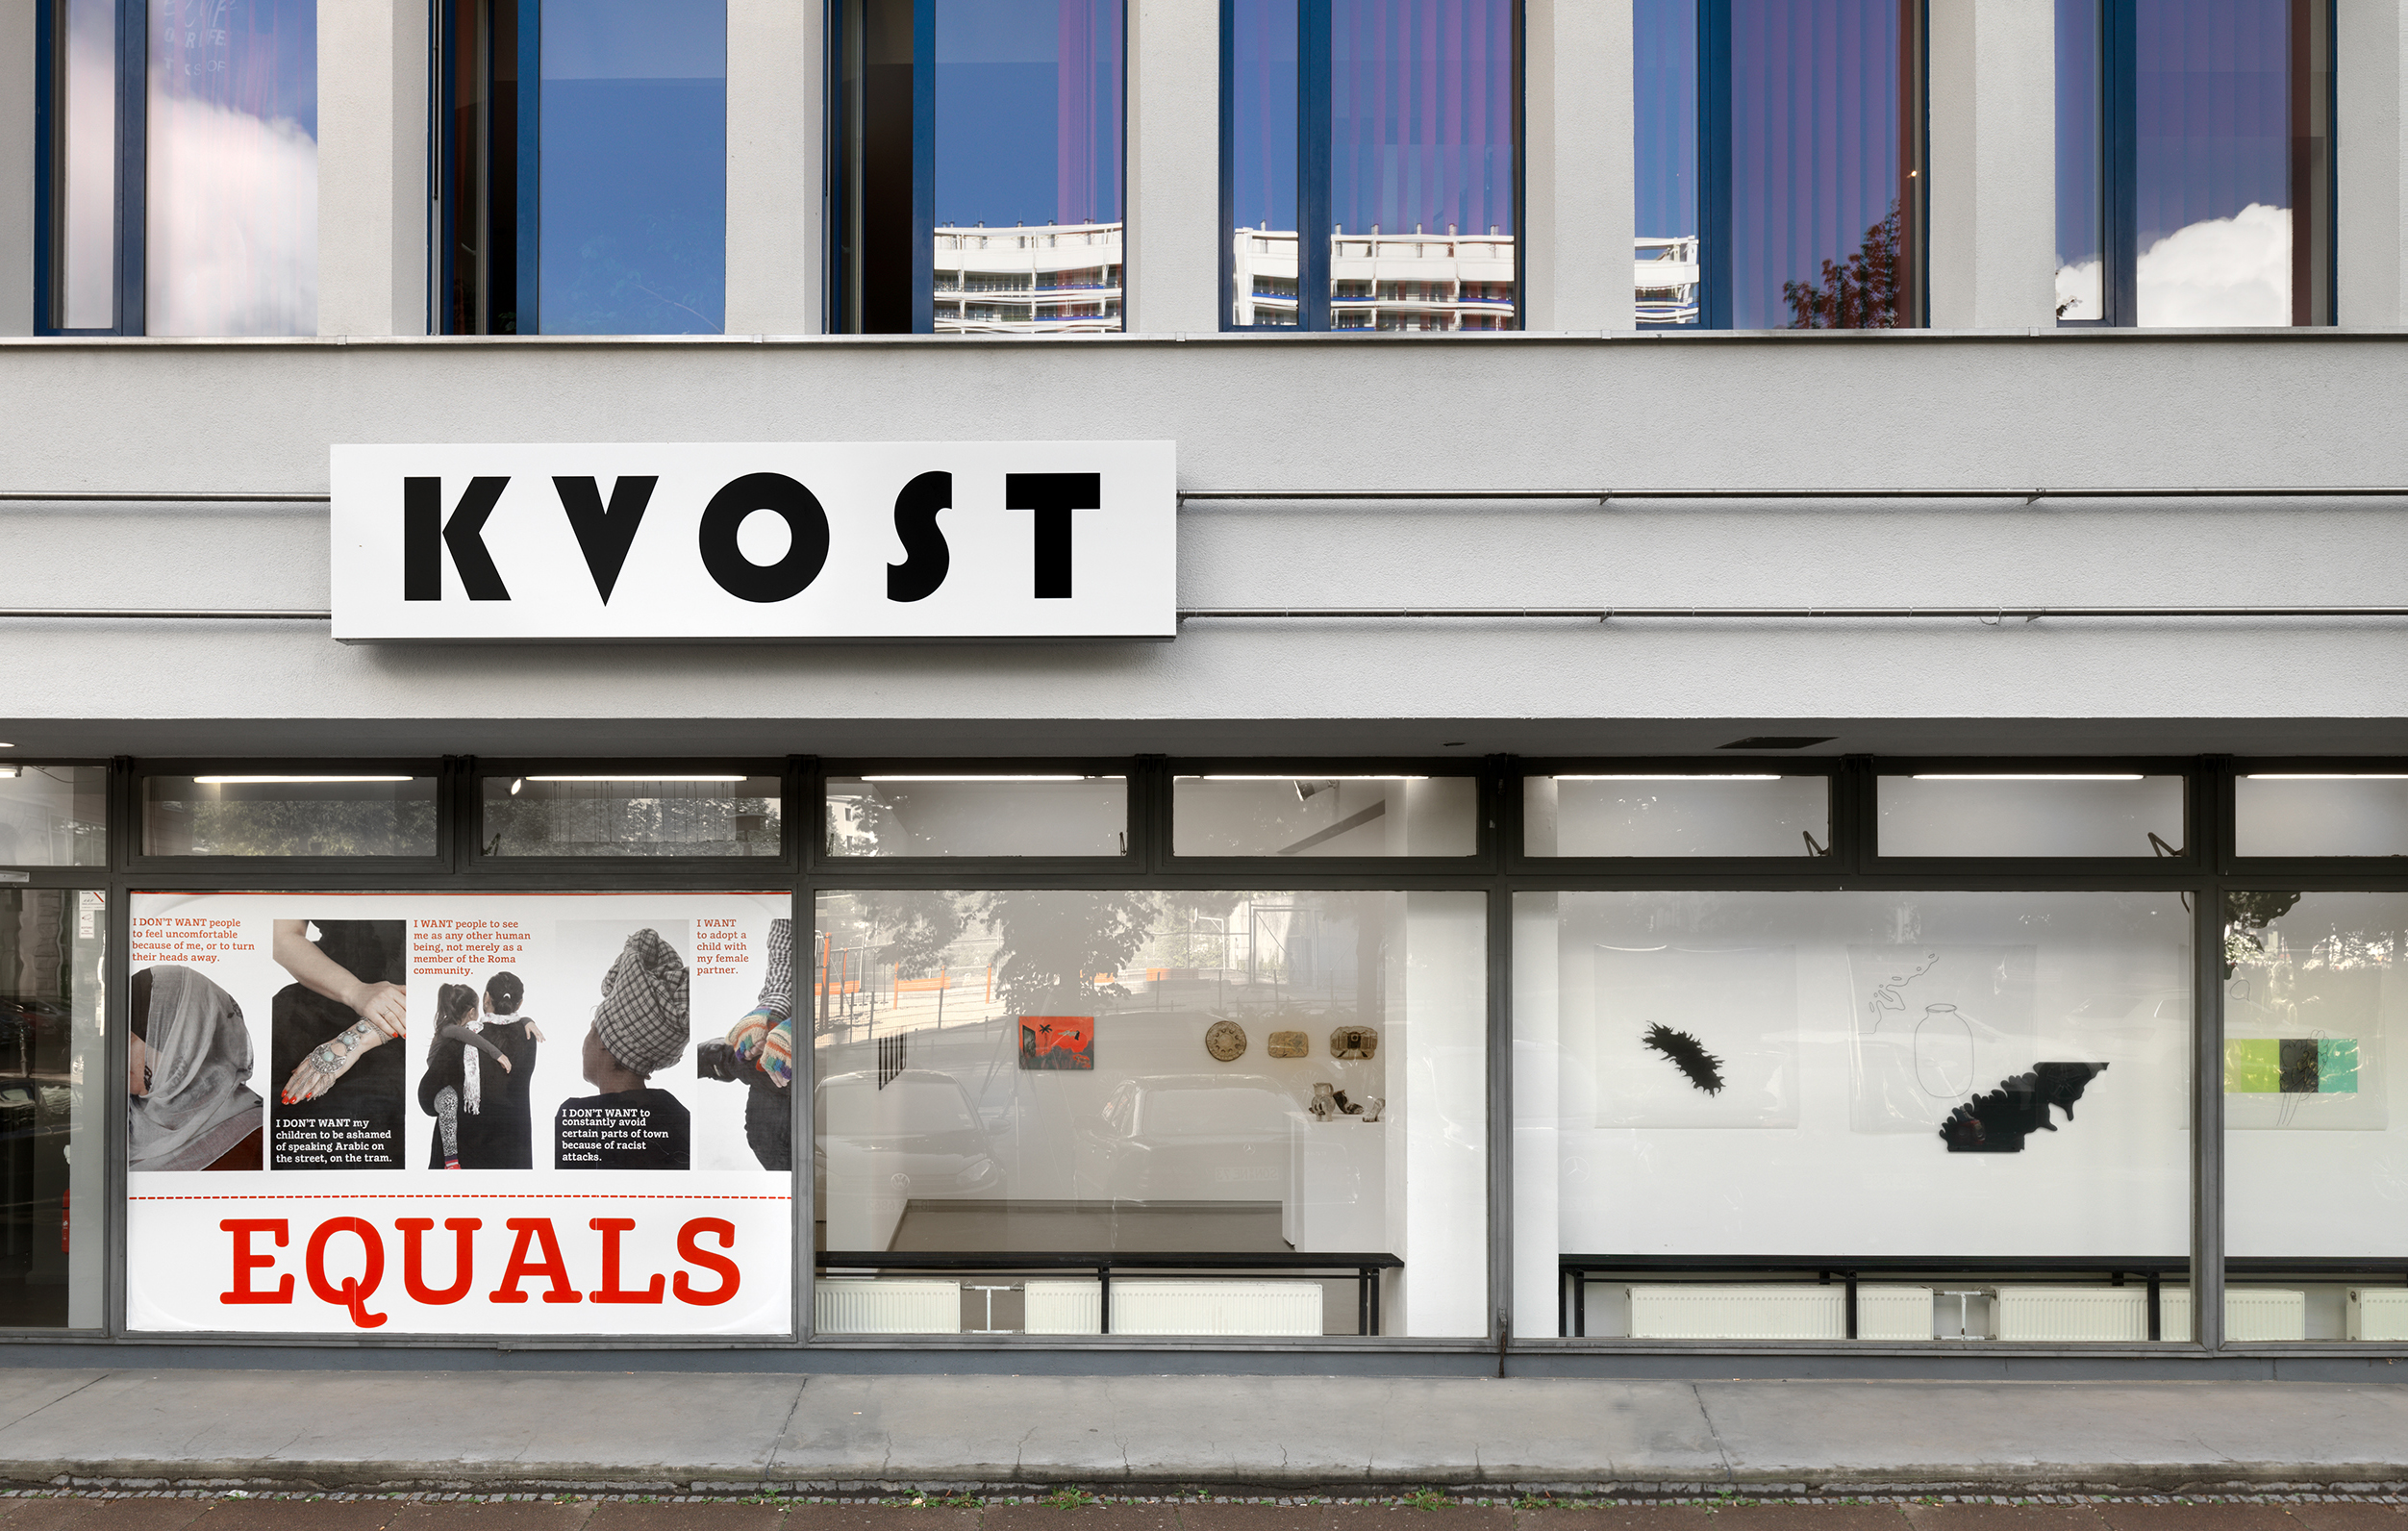 Einer der neueren Kunstvereine in Berlin: KVOST liegt nur einen Katzensprung entfernt zu anderen Kunstorten an der Leipziger Straße.